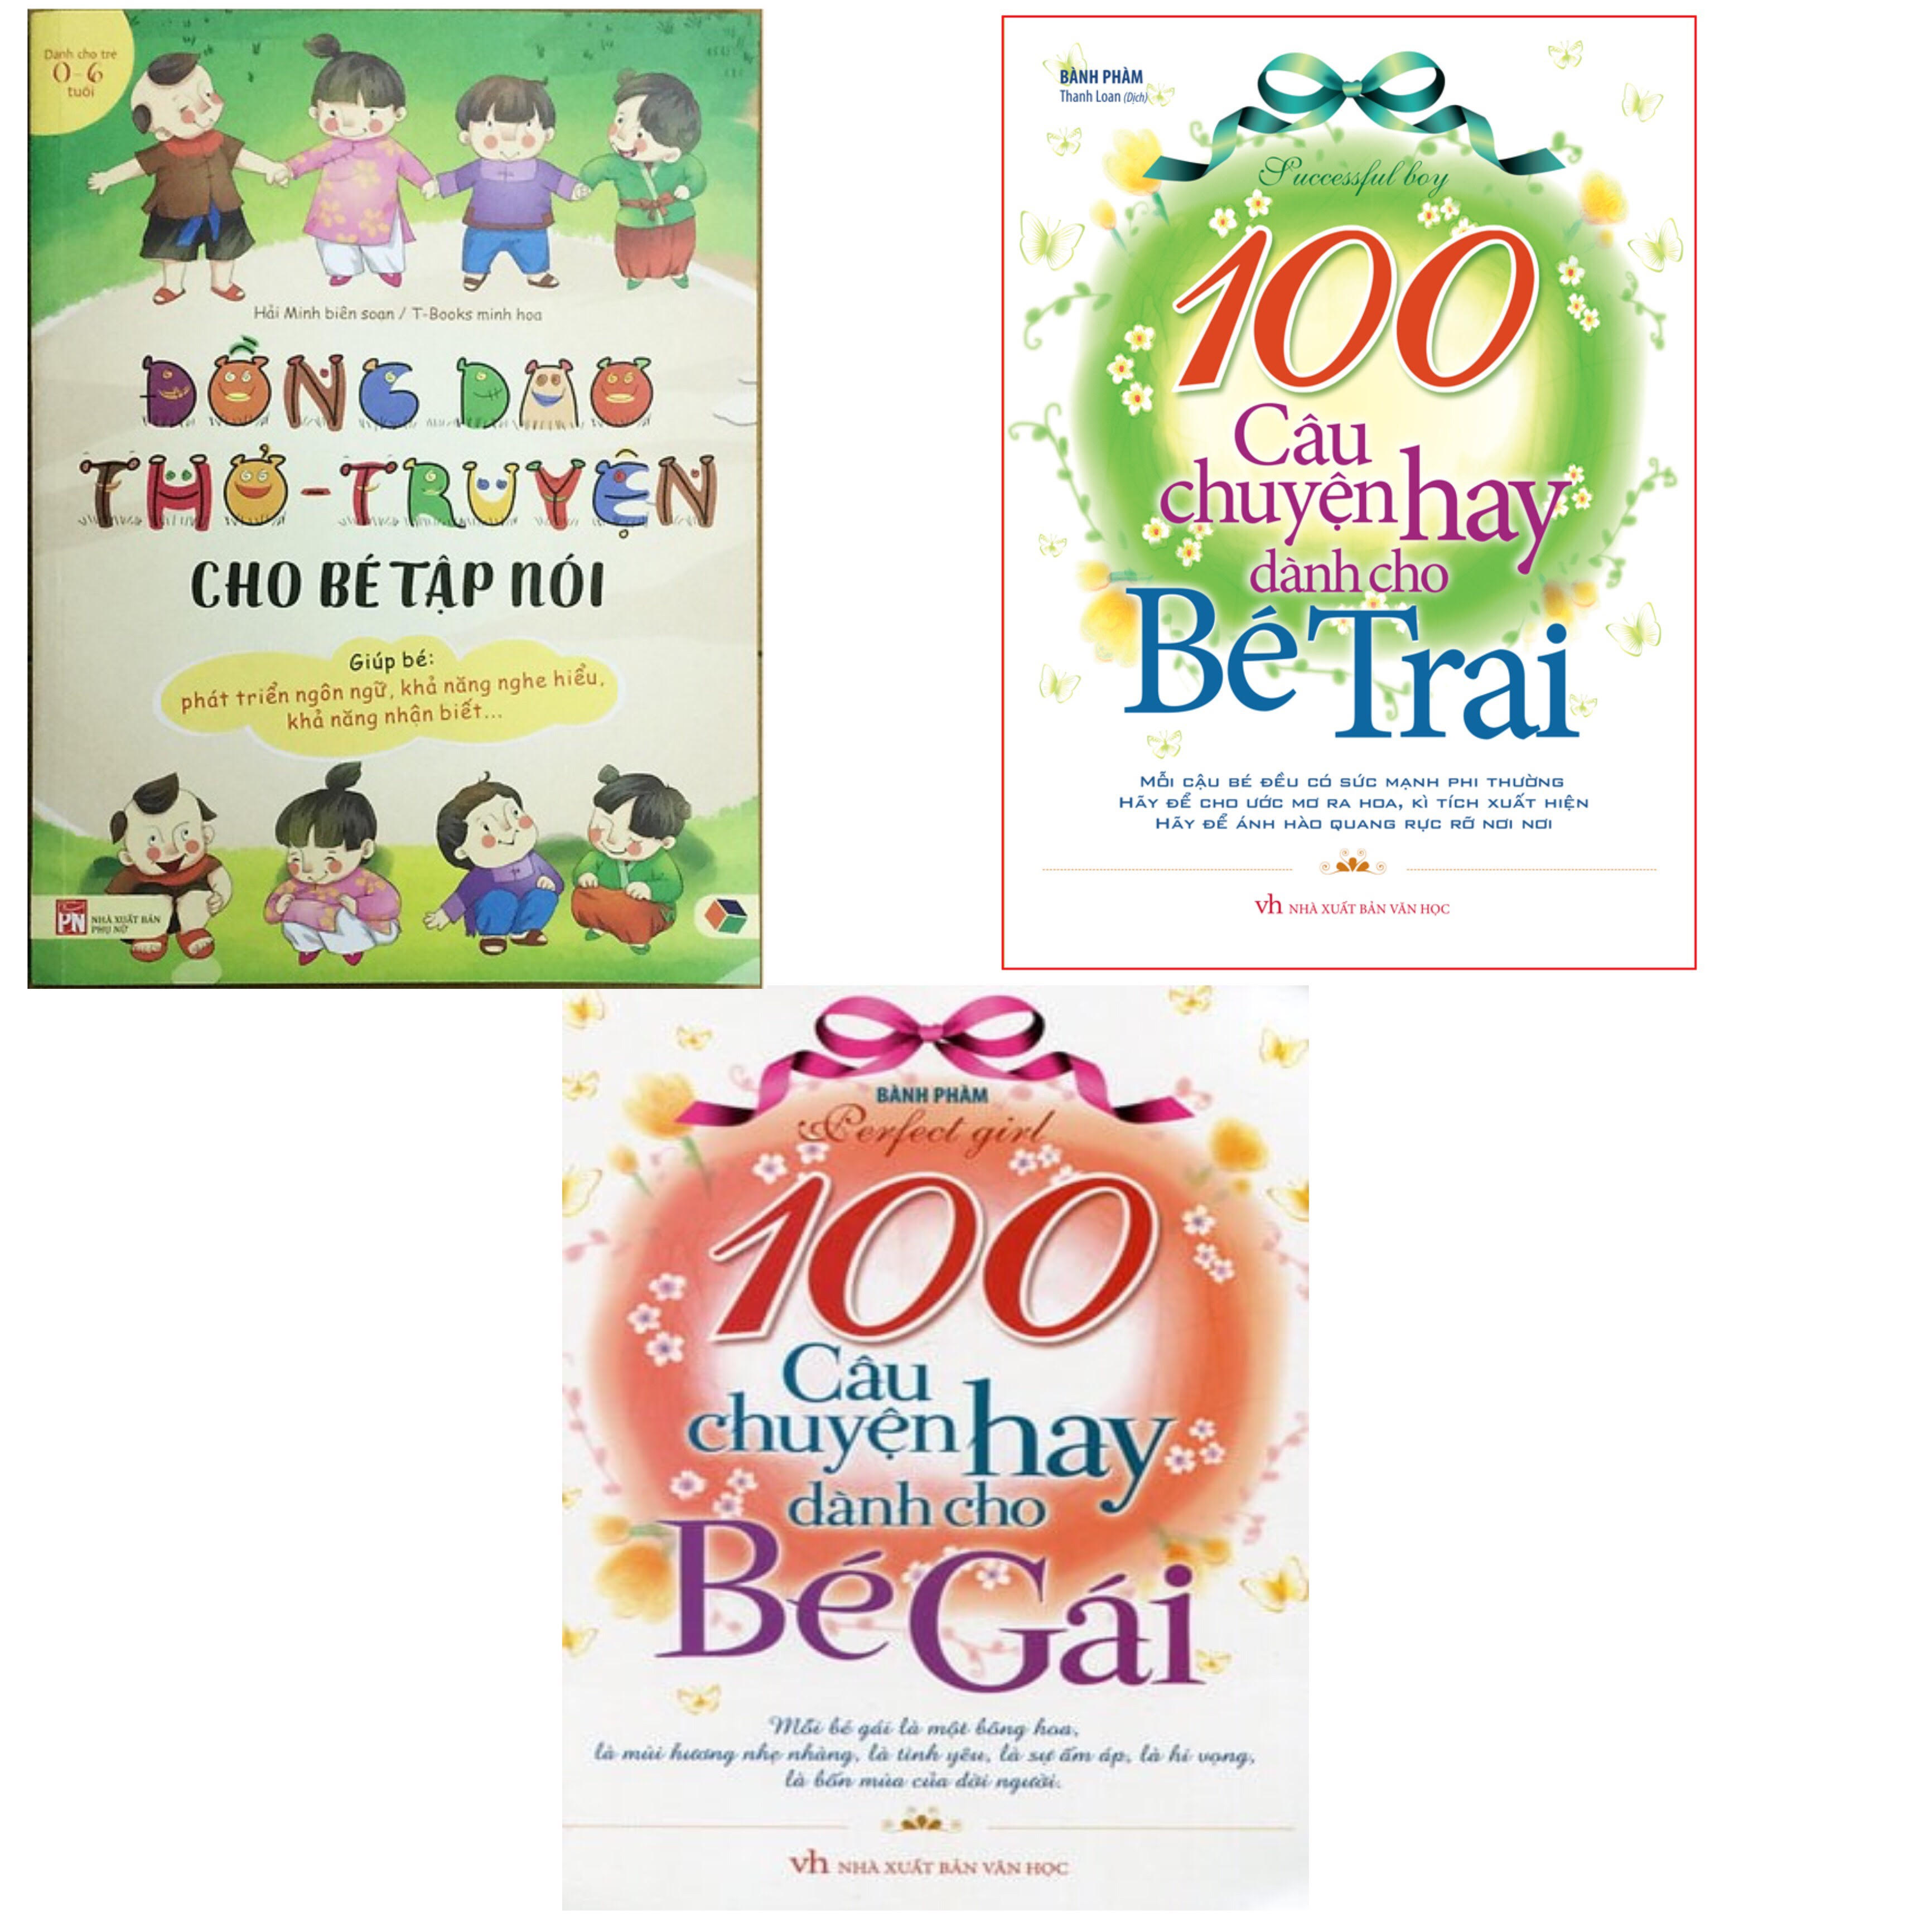 Combo 3 quyển - ĐỒng dao thơ truyện cho bé tập nói + 100 câu chuyện bé trai + 100 câu chuyện bé gái